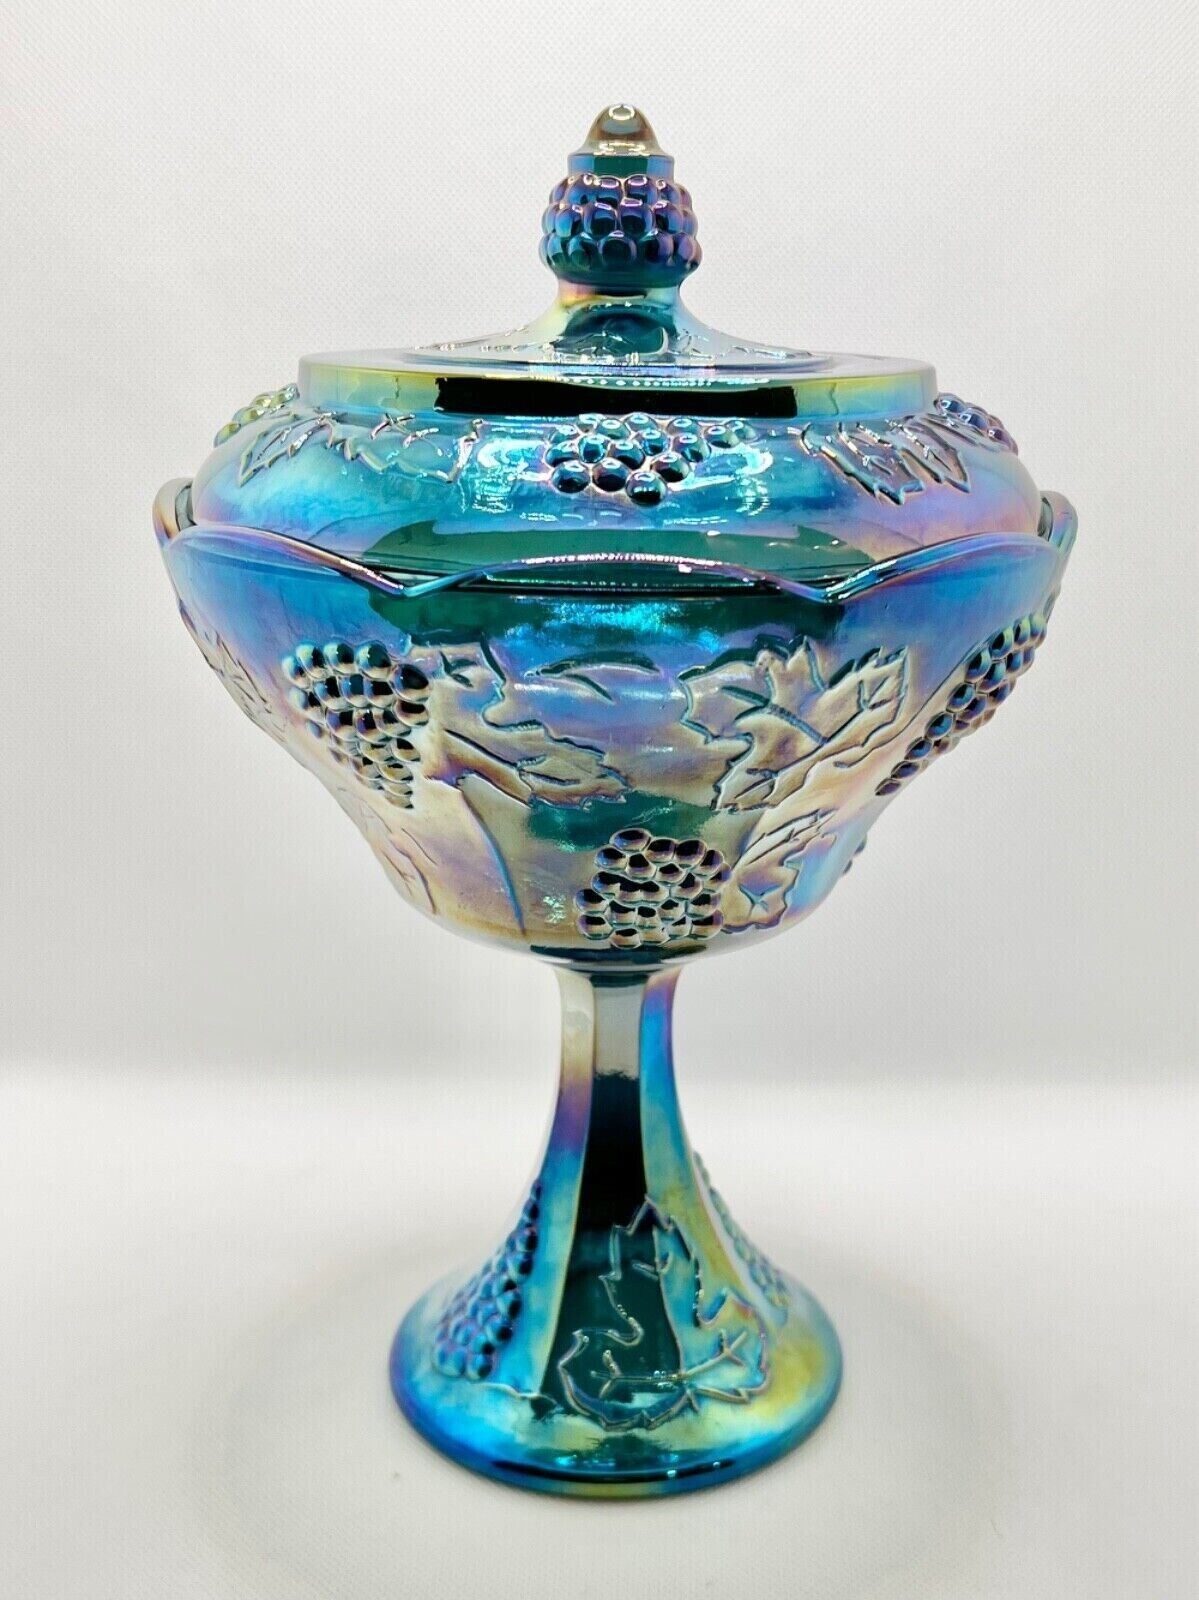 Blue Carnival Glass Pedestal Bowl Harvest Grape design with Lid